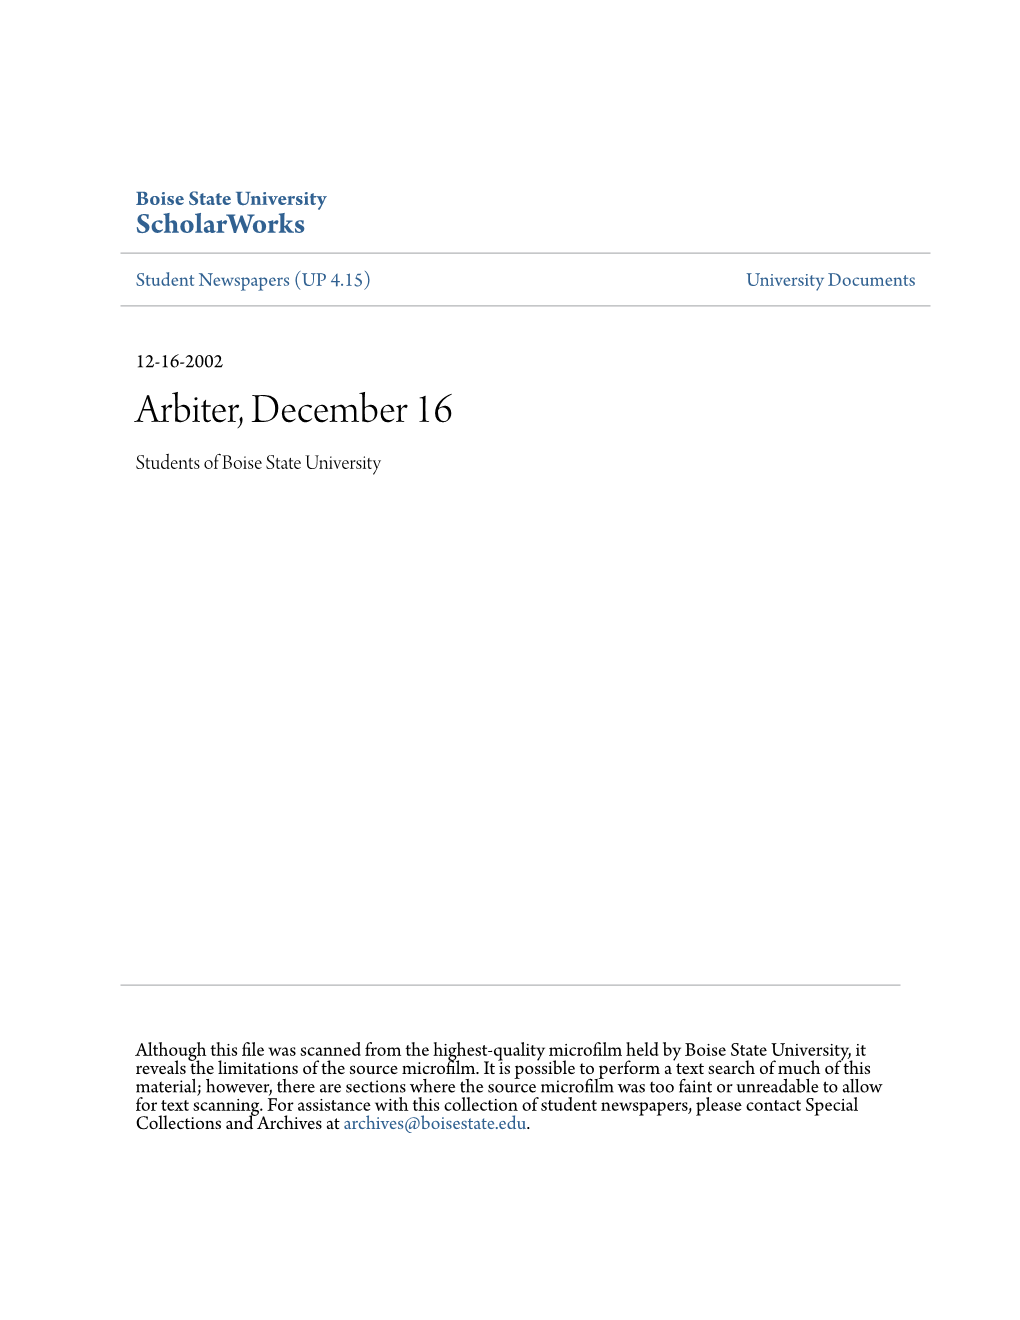 Arbiter, December 16 Students of Boise State University